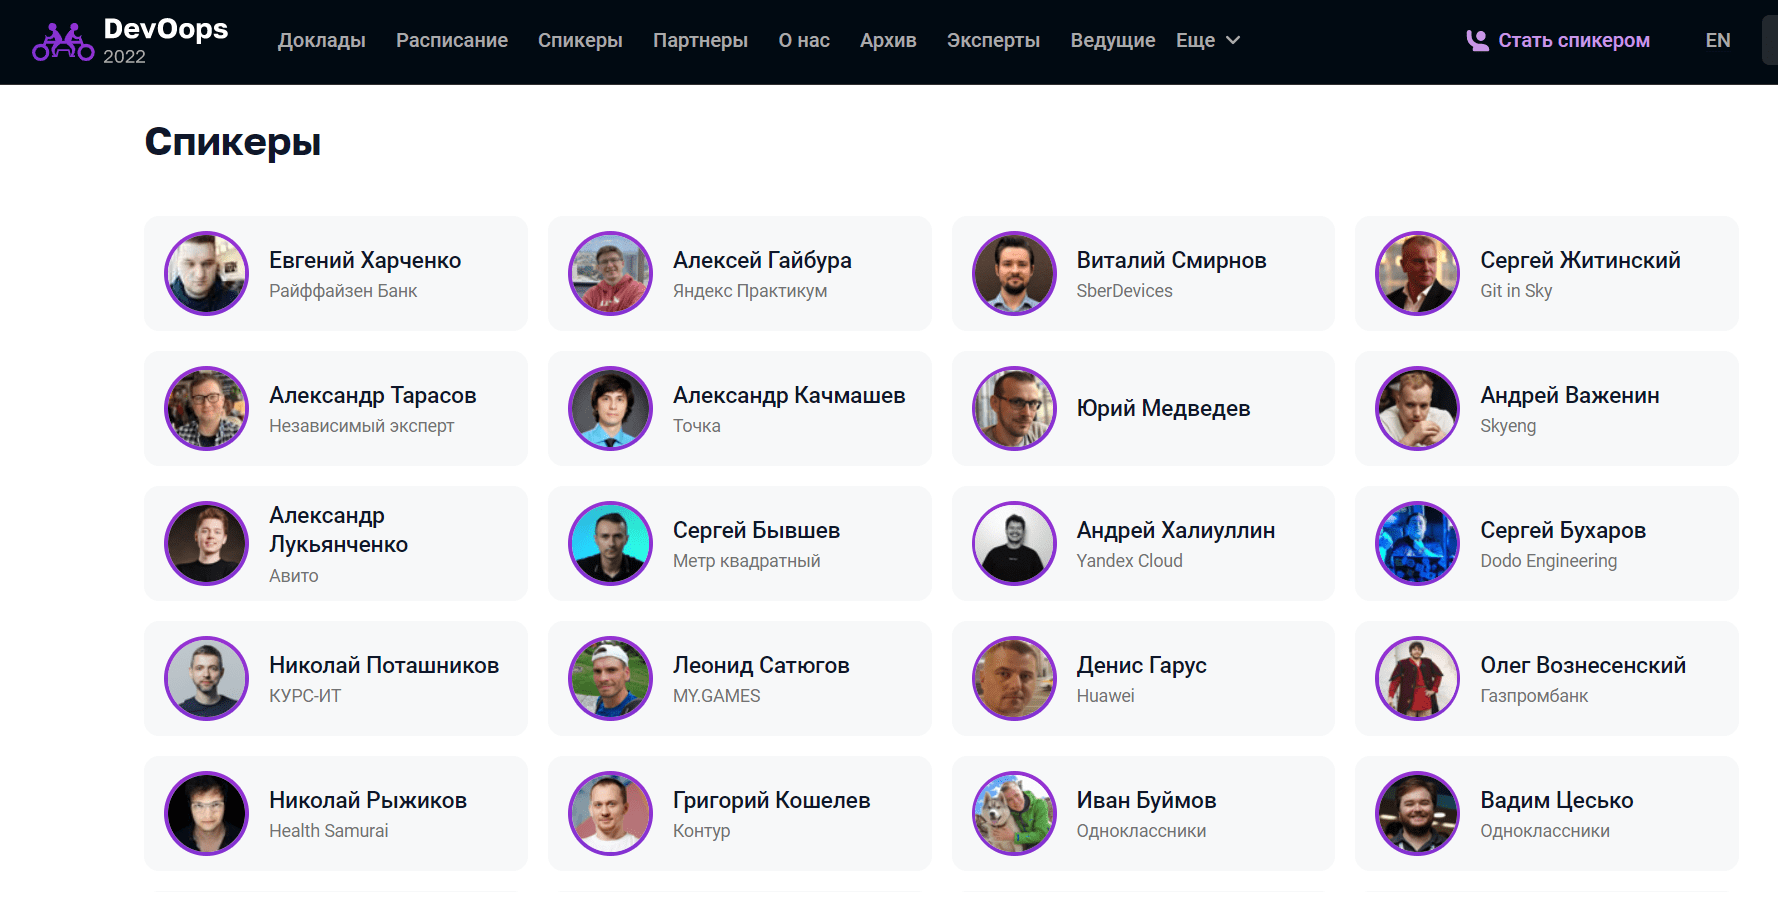 Список спикеров конференции DevOops